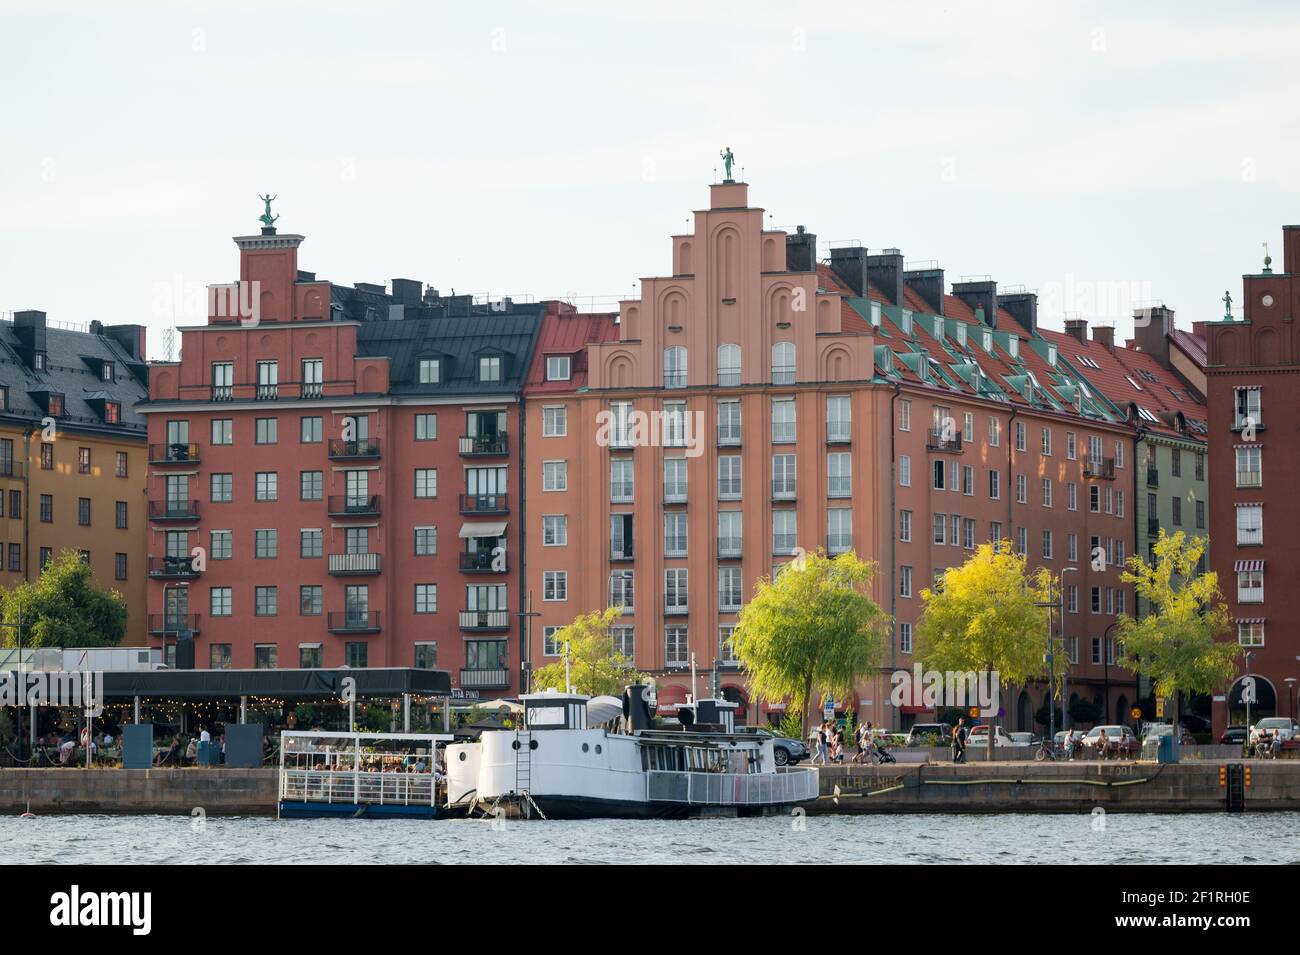 Boats and buildings along Norr Mälarstrand, Kungsholmen, Stockholm, Sweden. Stock Photo